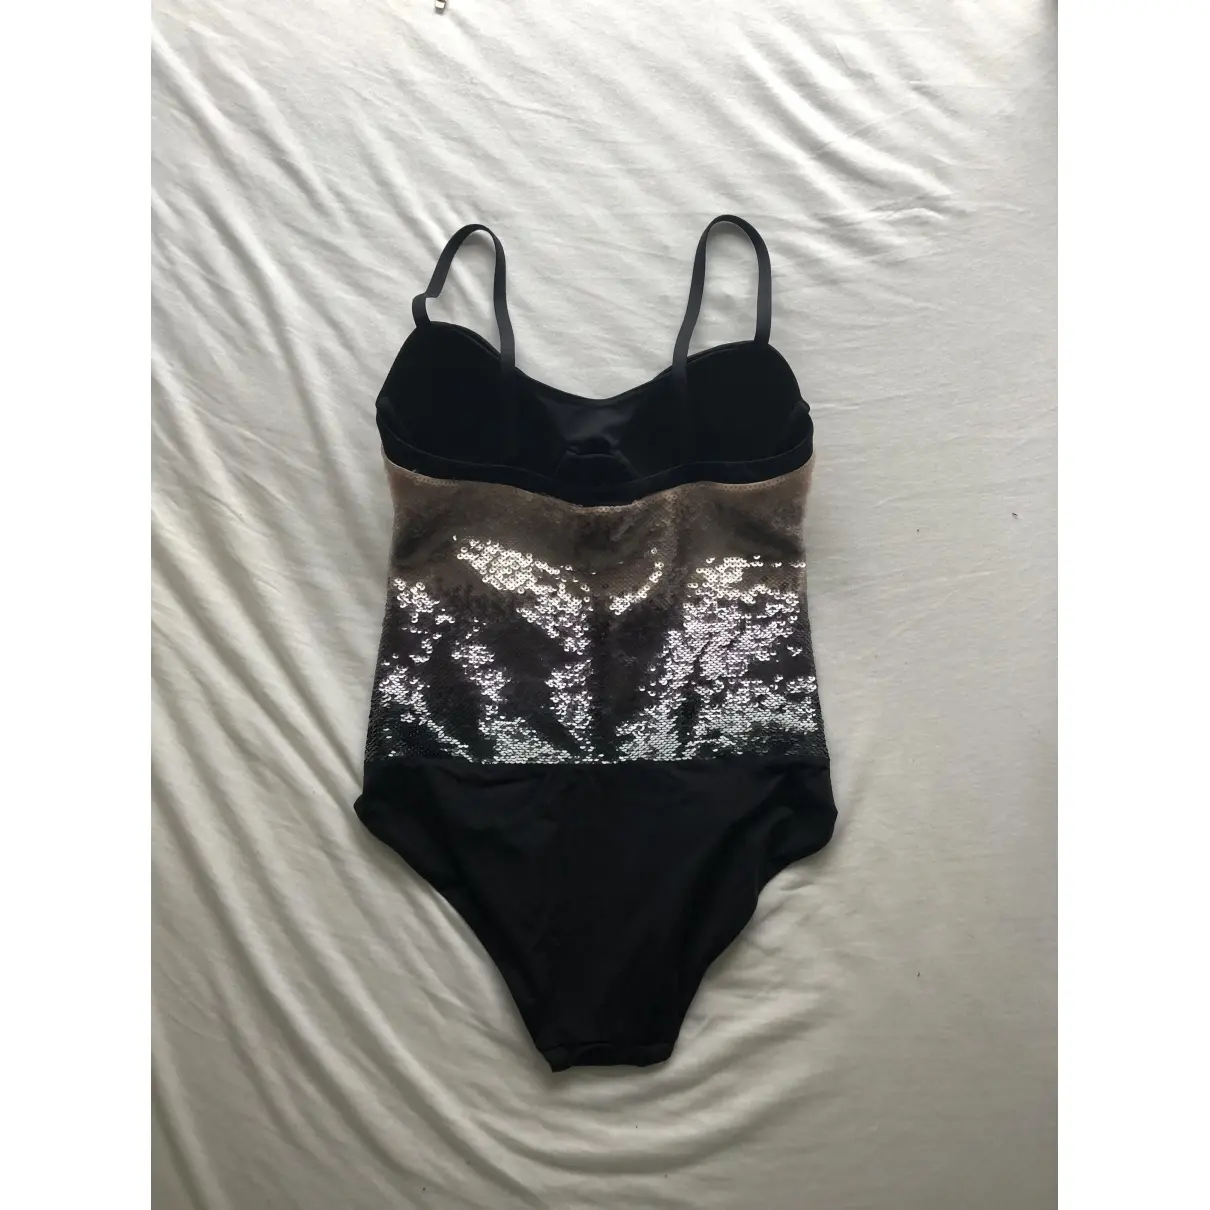 La Perla One-piece swimsuit for sale